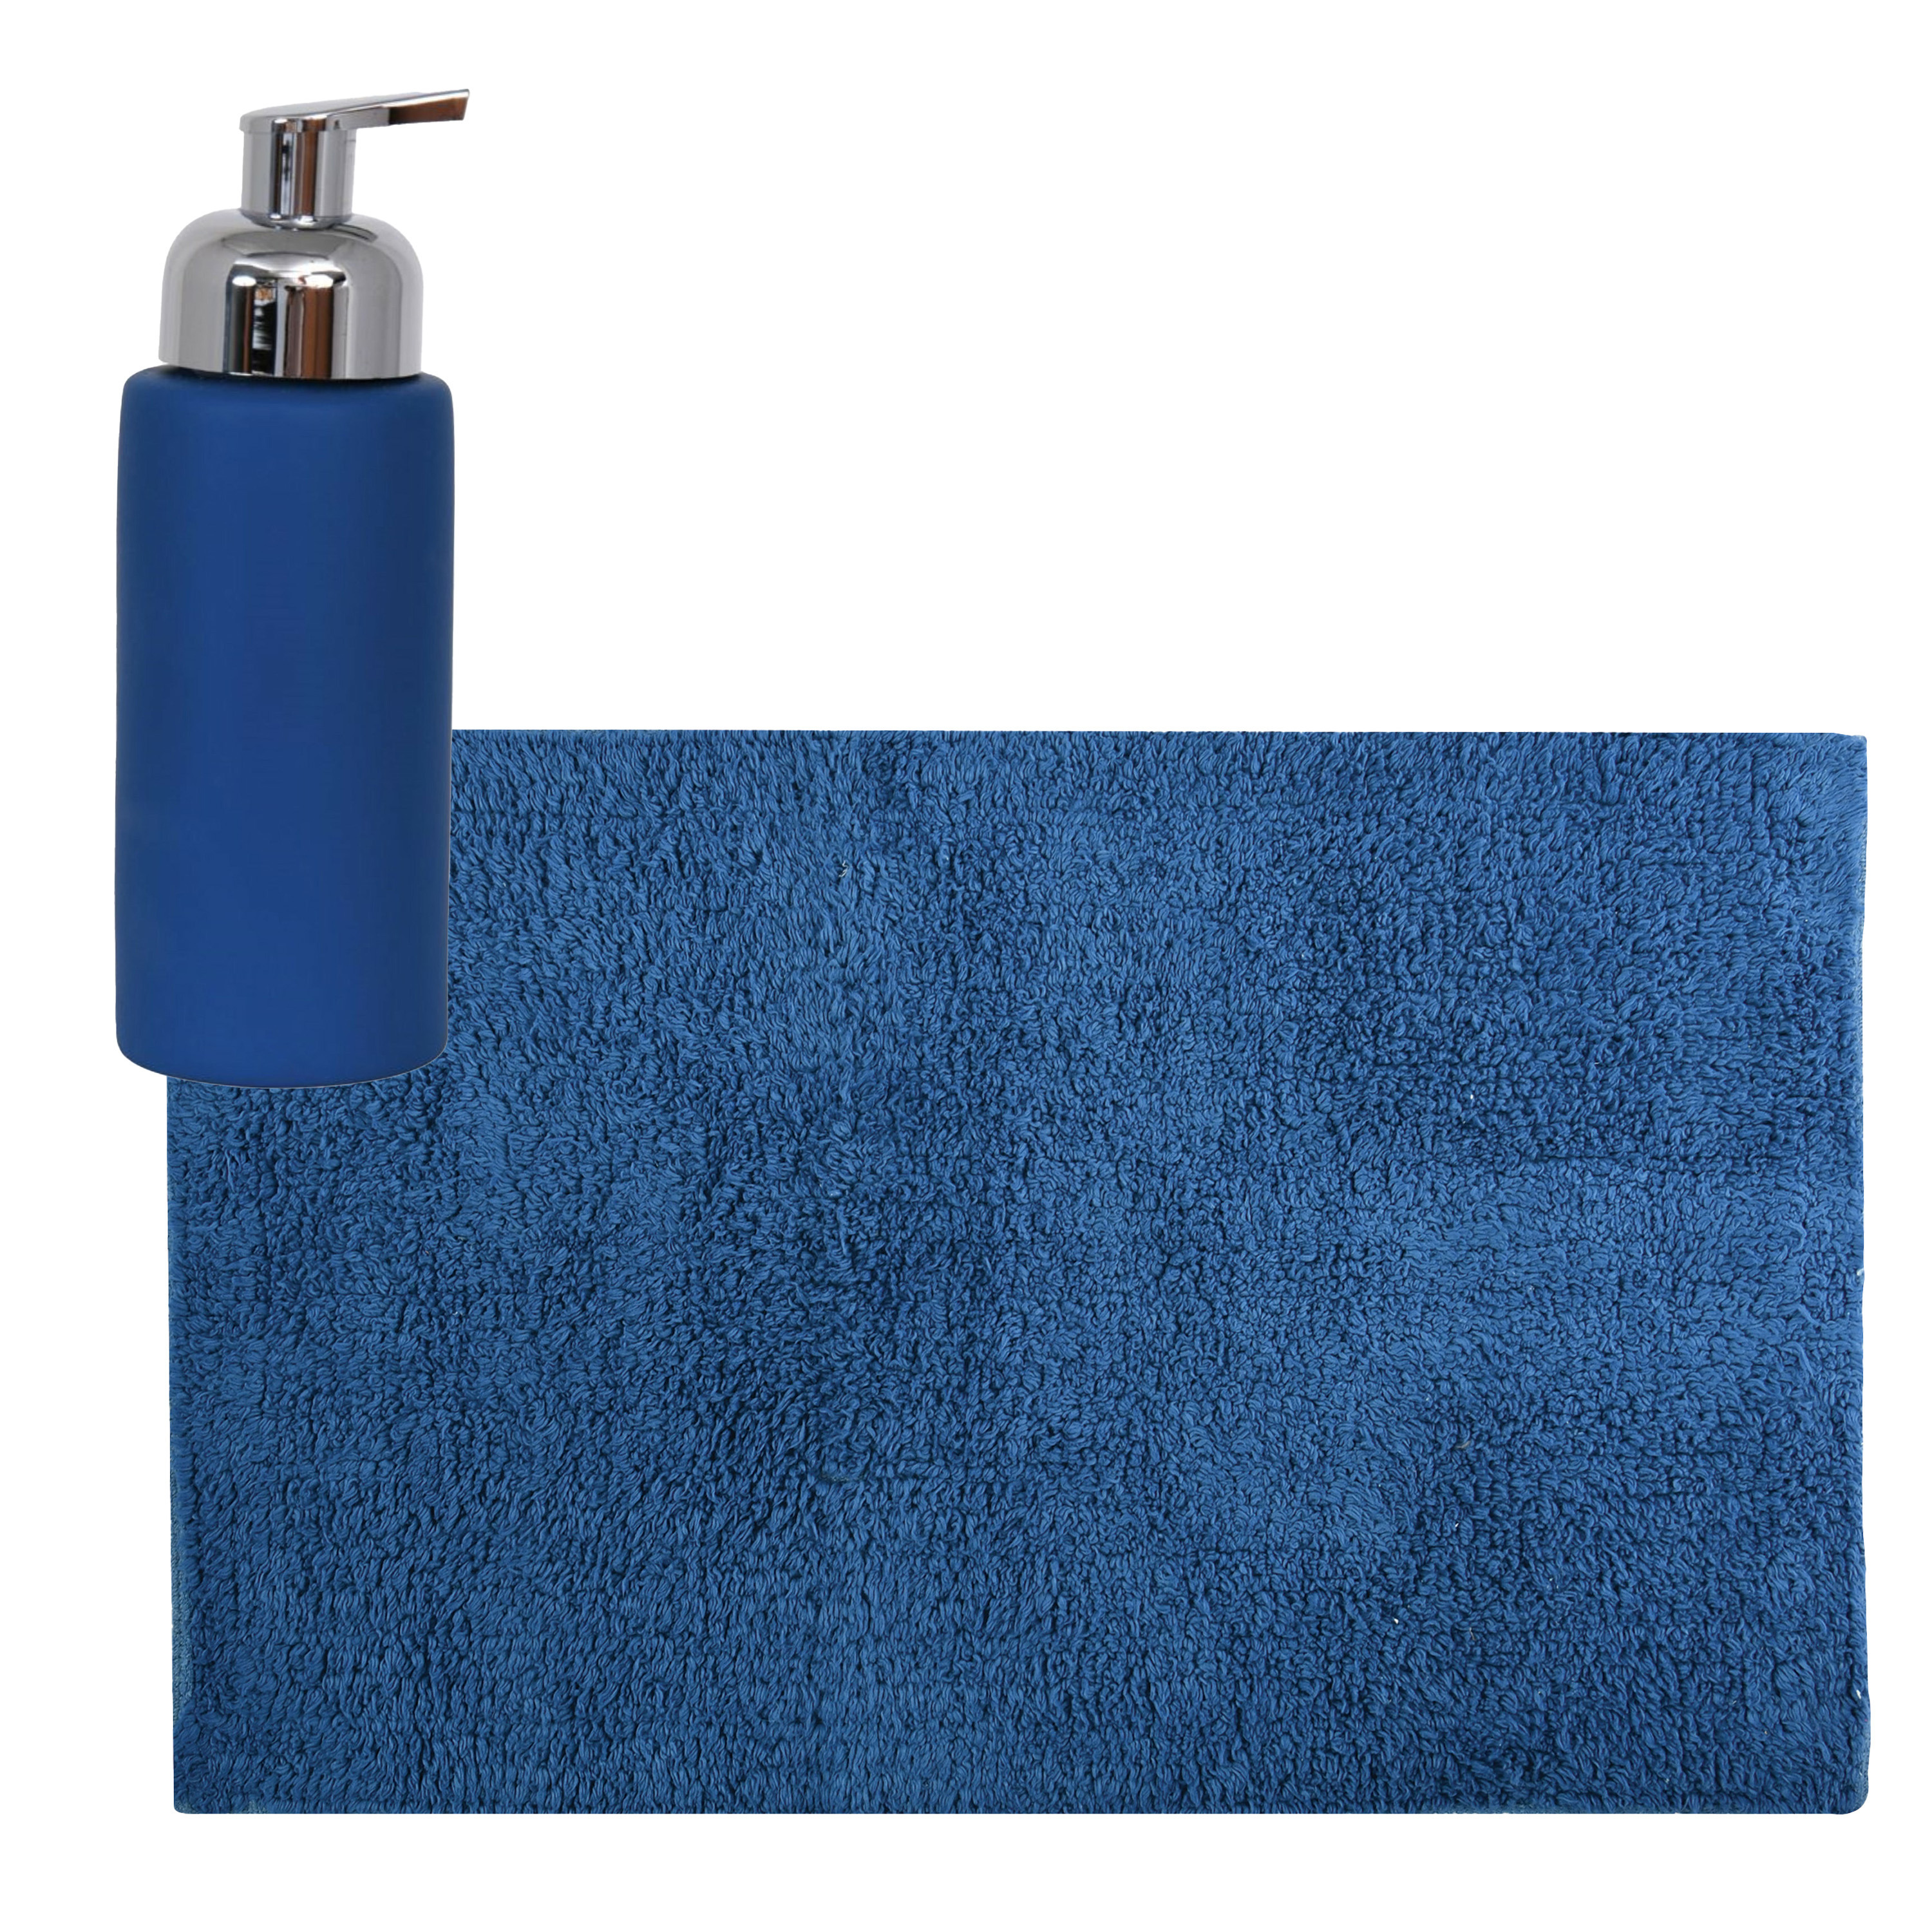 MSV badkamer droogloop mat-tapijt 40 x 60 cm met zelfde kleur zeeppompje 250 ml donkerblauw